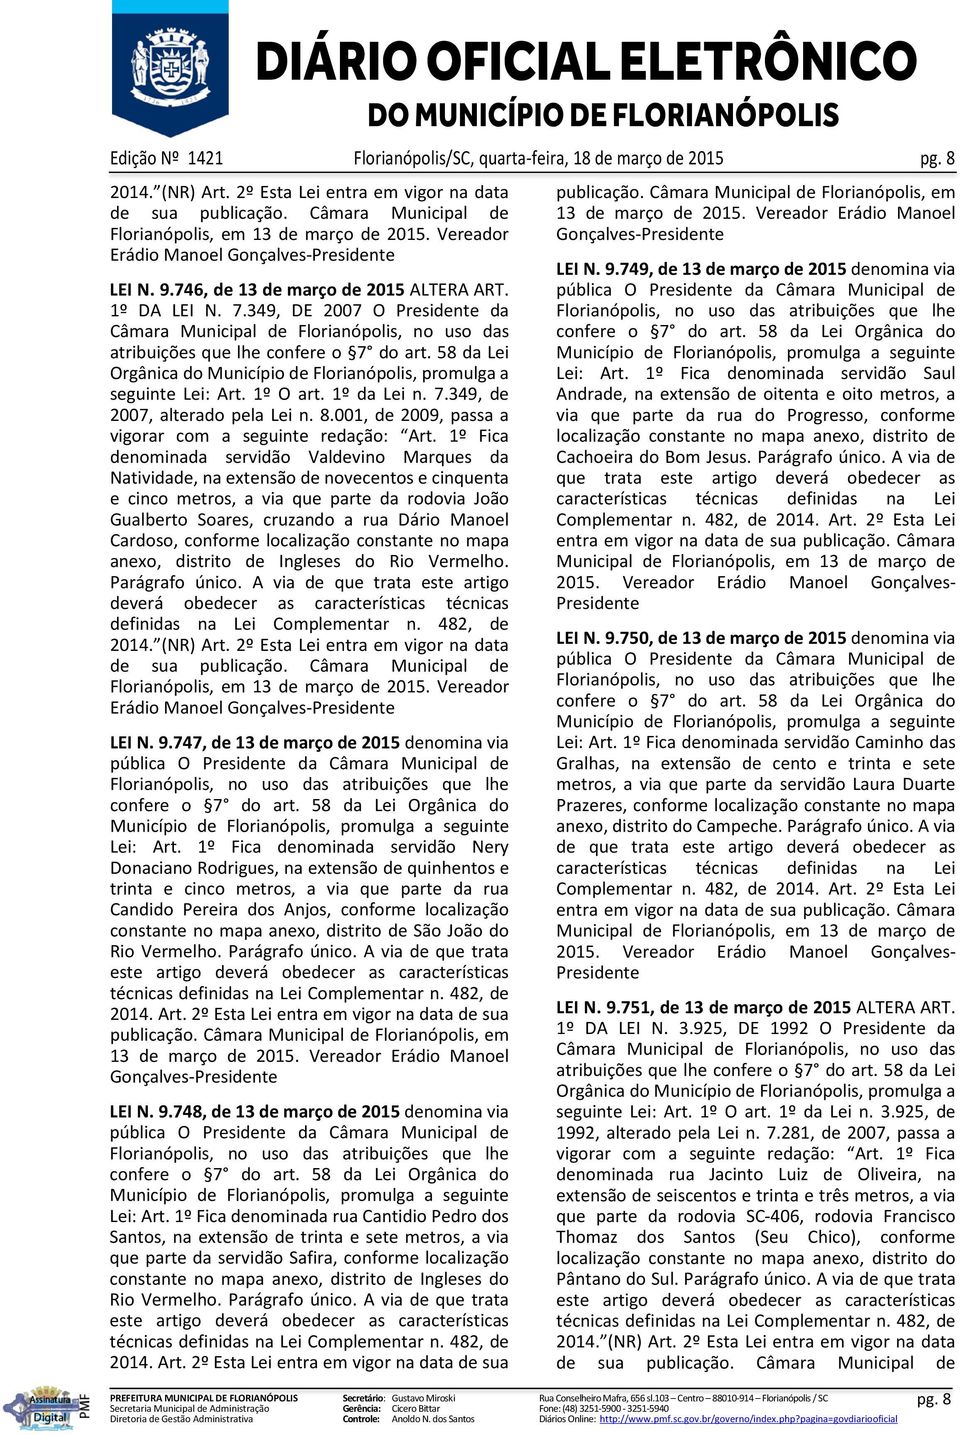 349, DE 2007 O Presidente da Câmara Municipal de Florianópolis, no uso das atribuições que lhe confere o 7 do art. 58 da Lei Orgânica do Município de Florianópolis, promulga a seguinte Lei: Art.